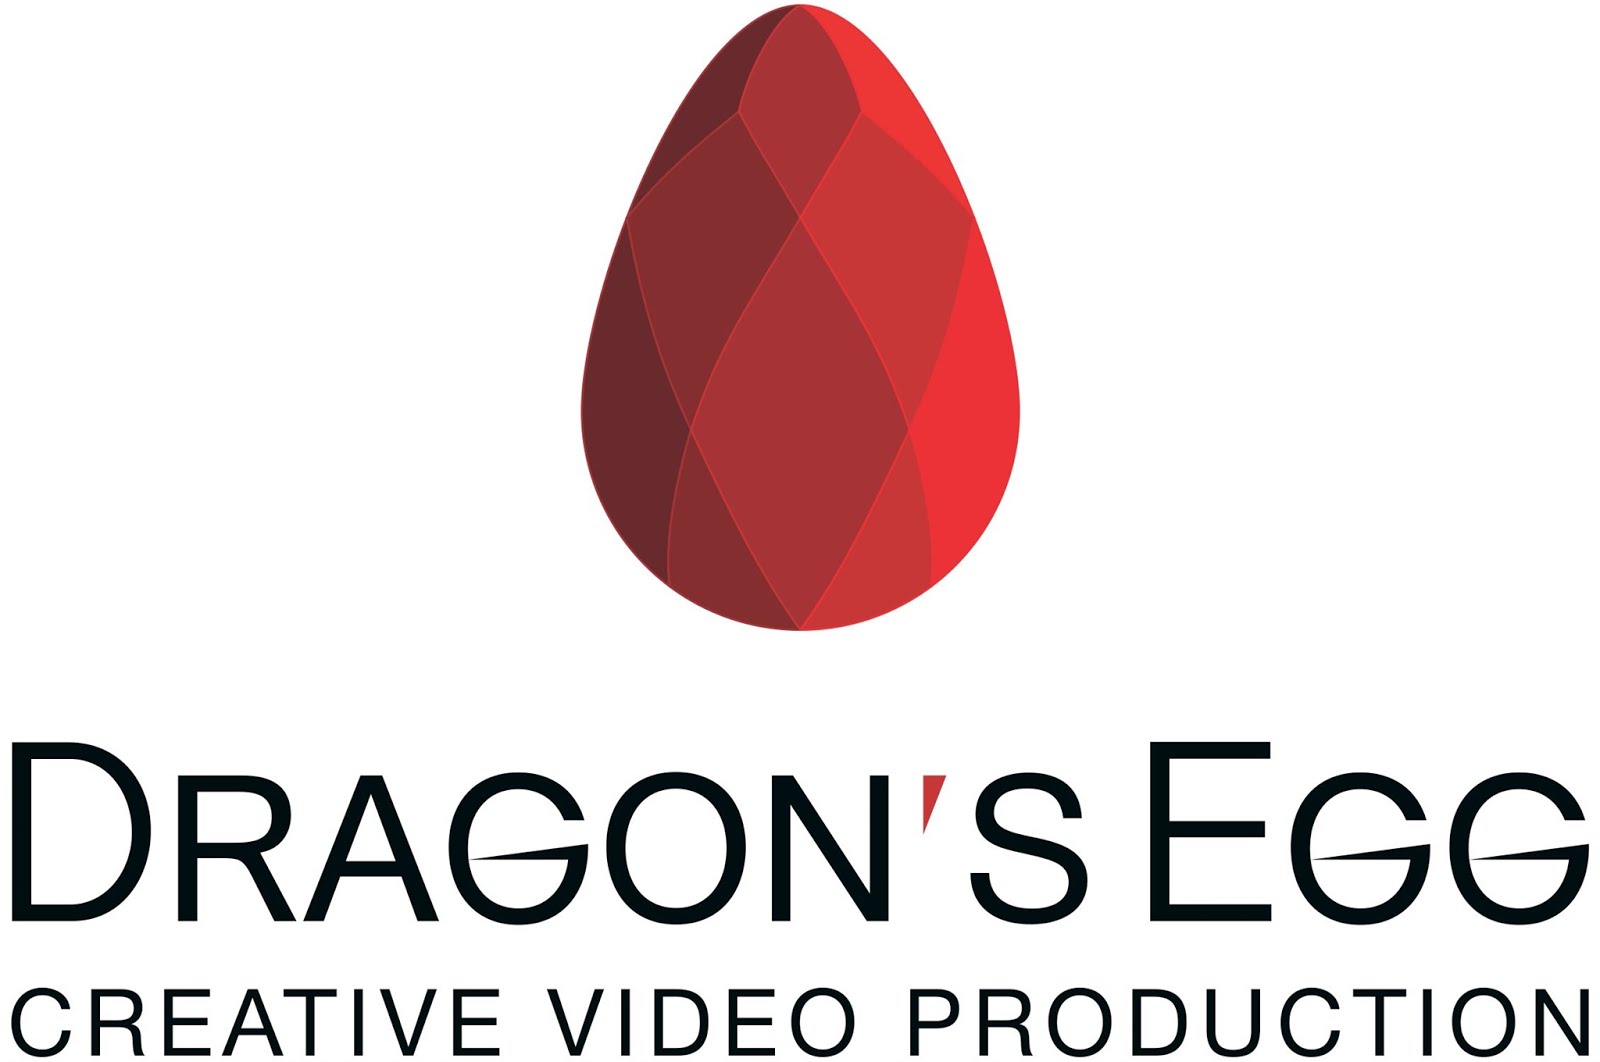                    DRAGON'S EGG 